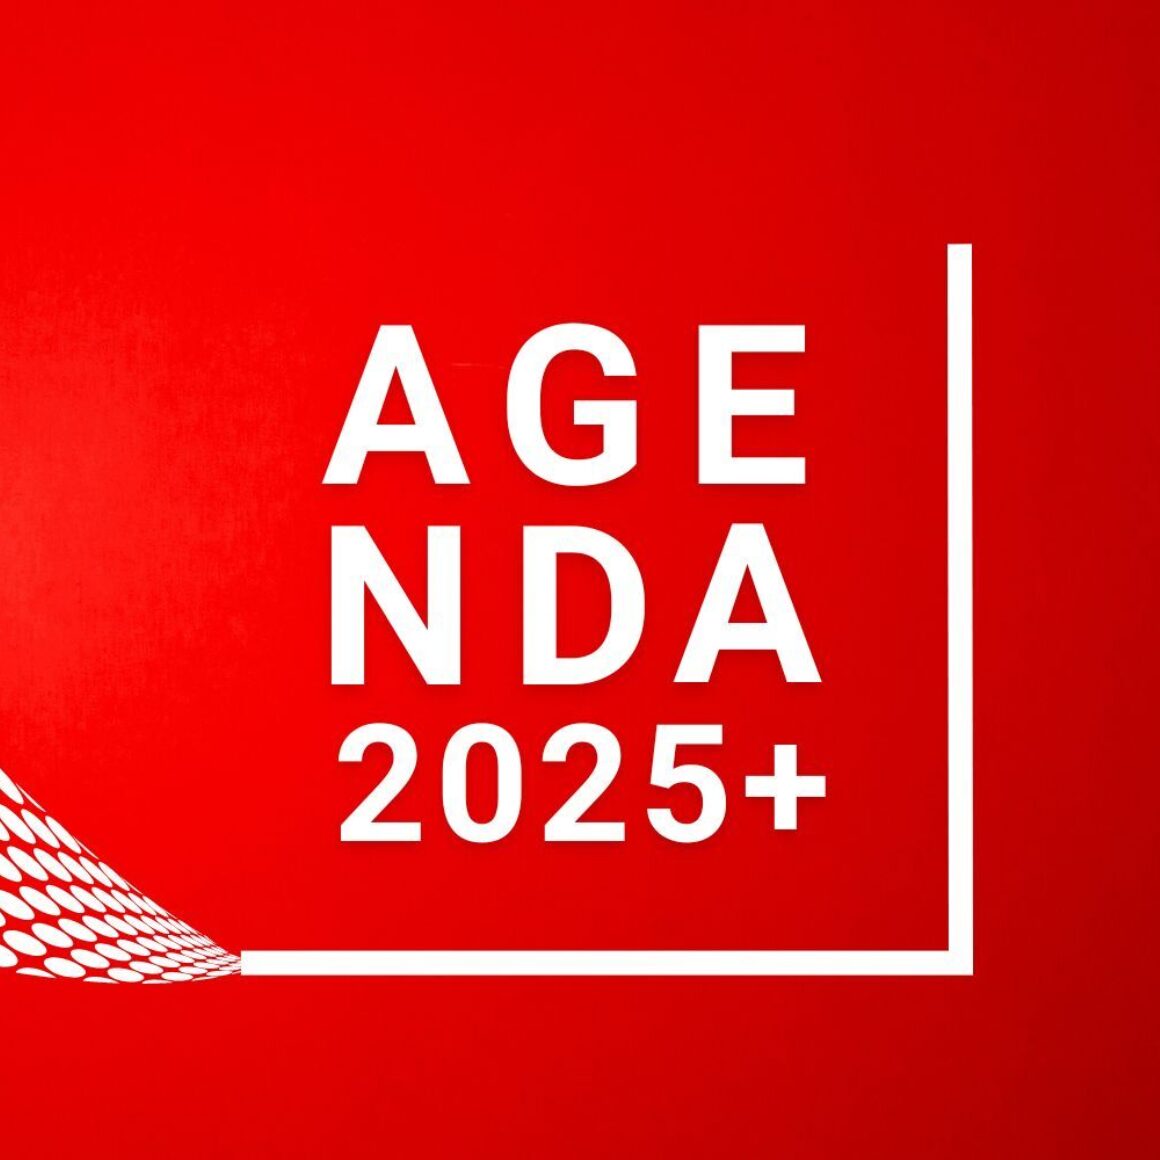 Agenda2025+